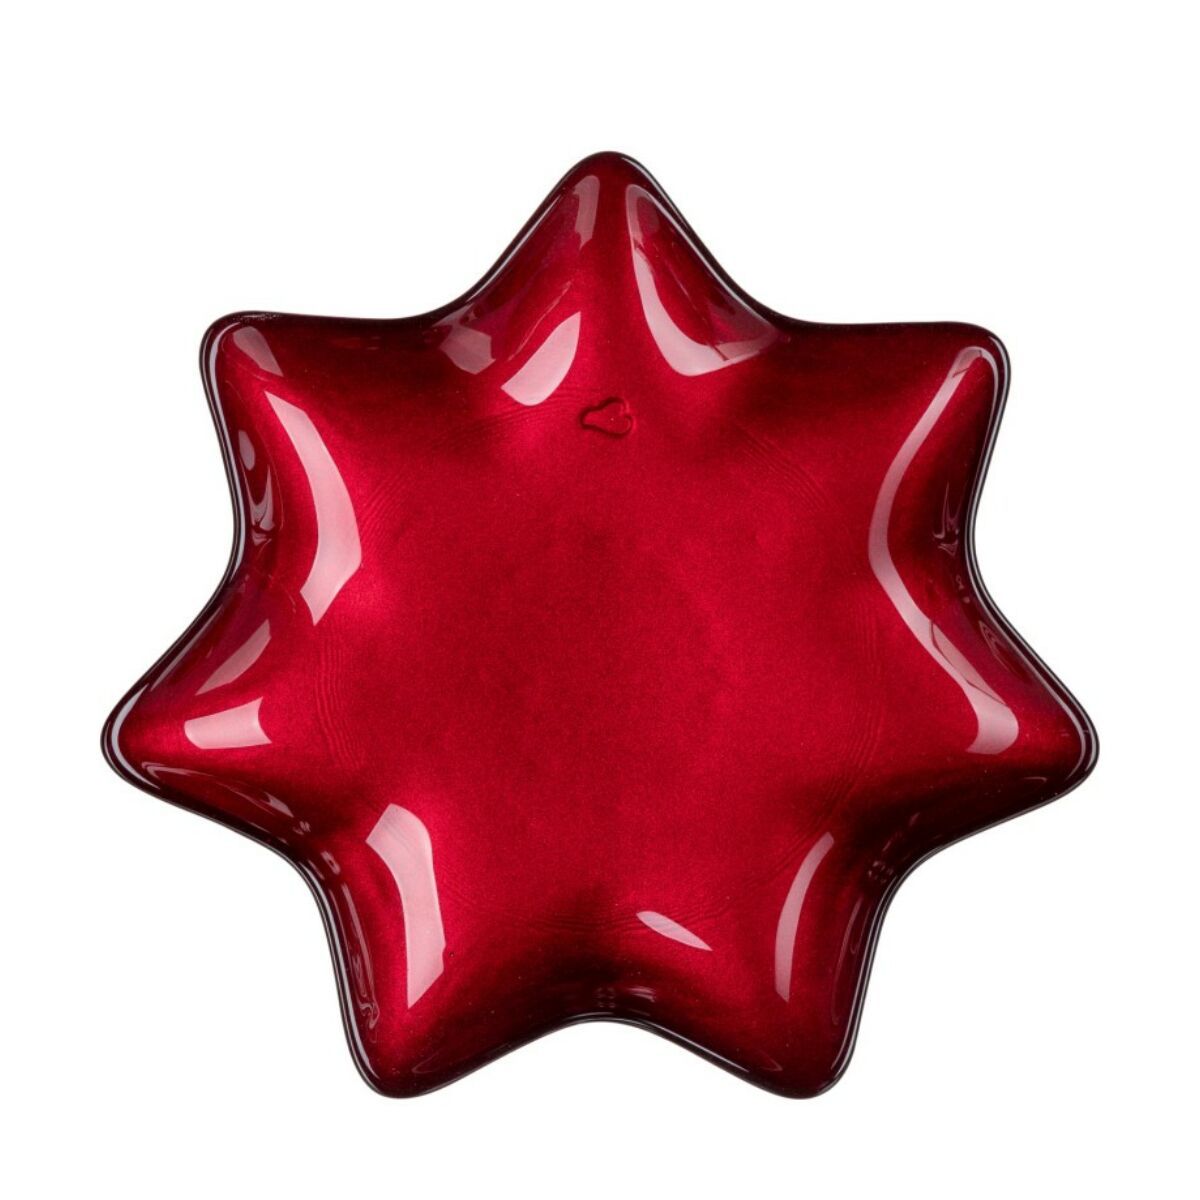 LEONARDO STELLA csillag alakú tányér 15cm, piros